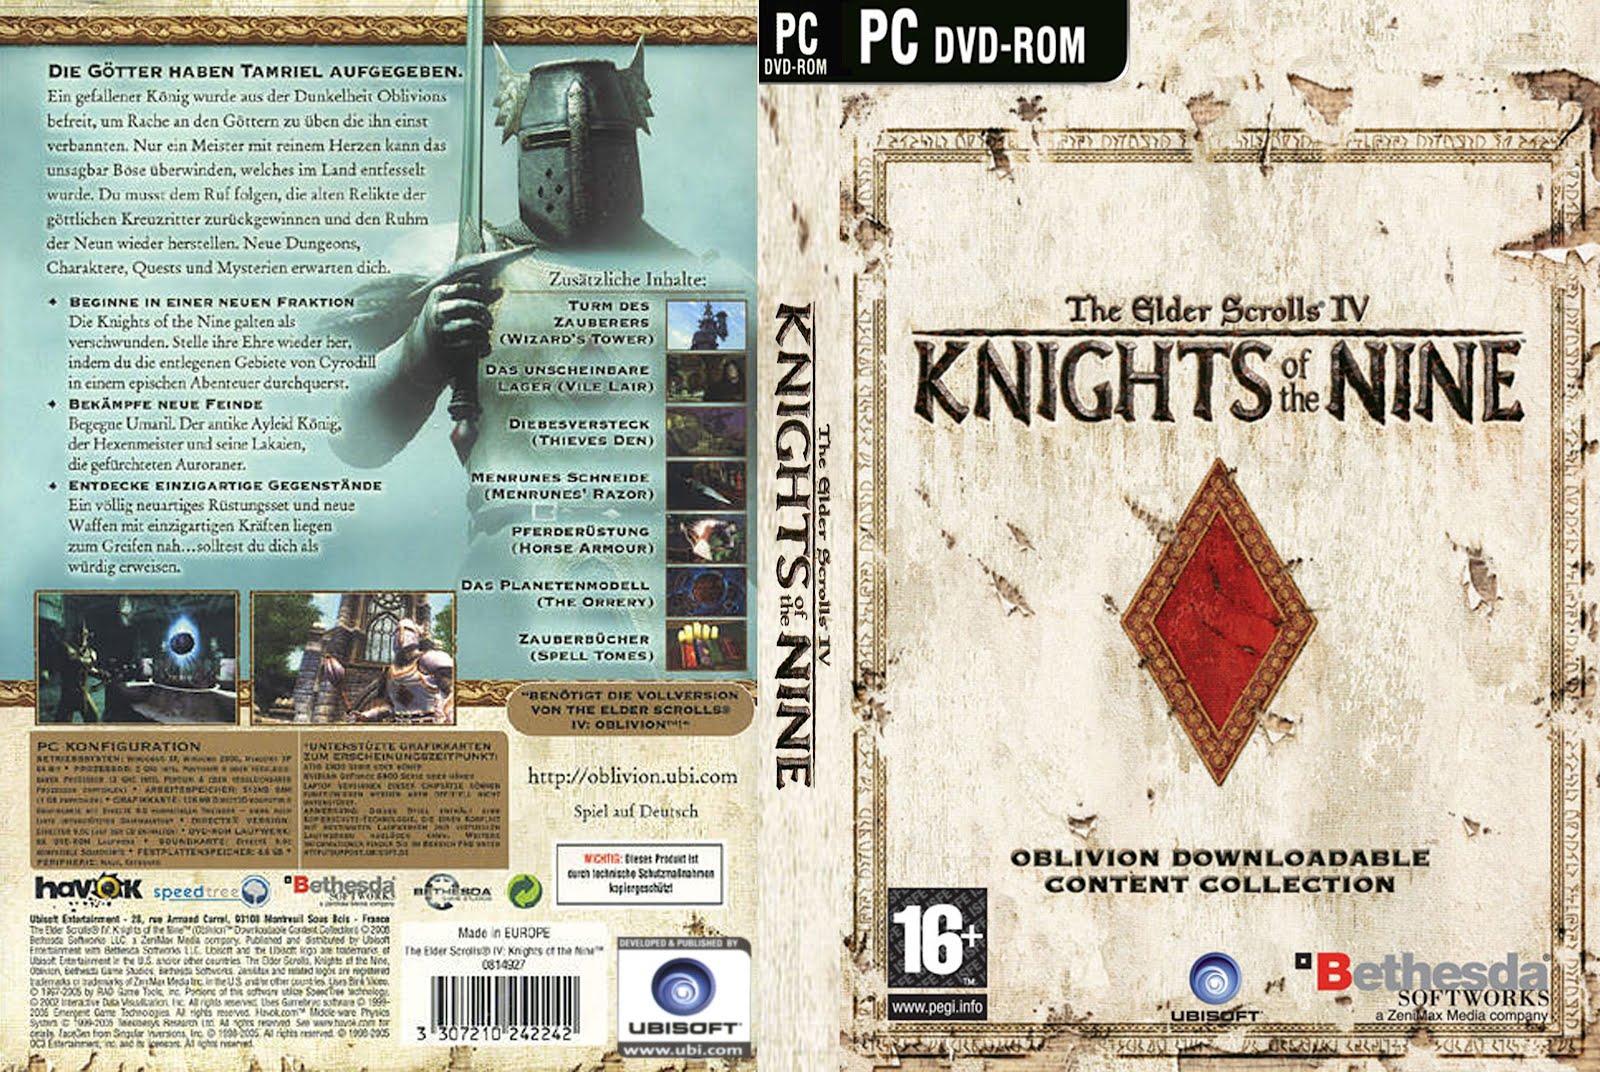 Сообщить девять. The Elder Scrolls IV: Knights of the Nine. The Elder Scrolls 4 Рыцари девяти. Oblivion Knights of the Nine. The Elder Scrolls 4 Oblivion Knights of the Nine.